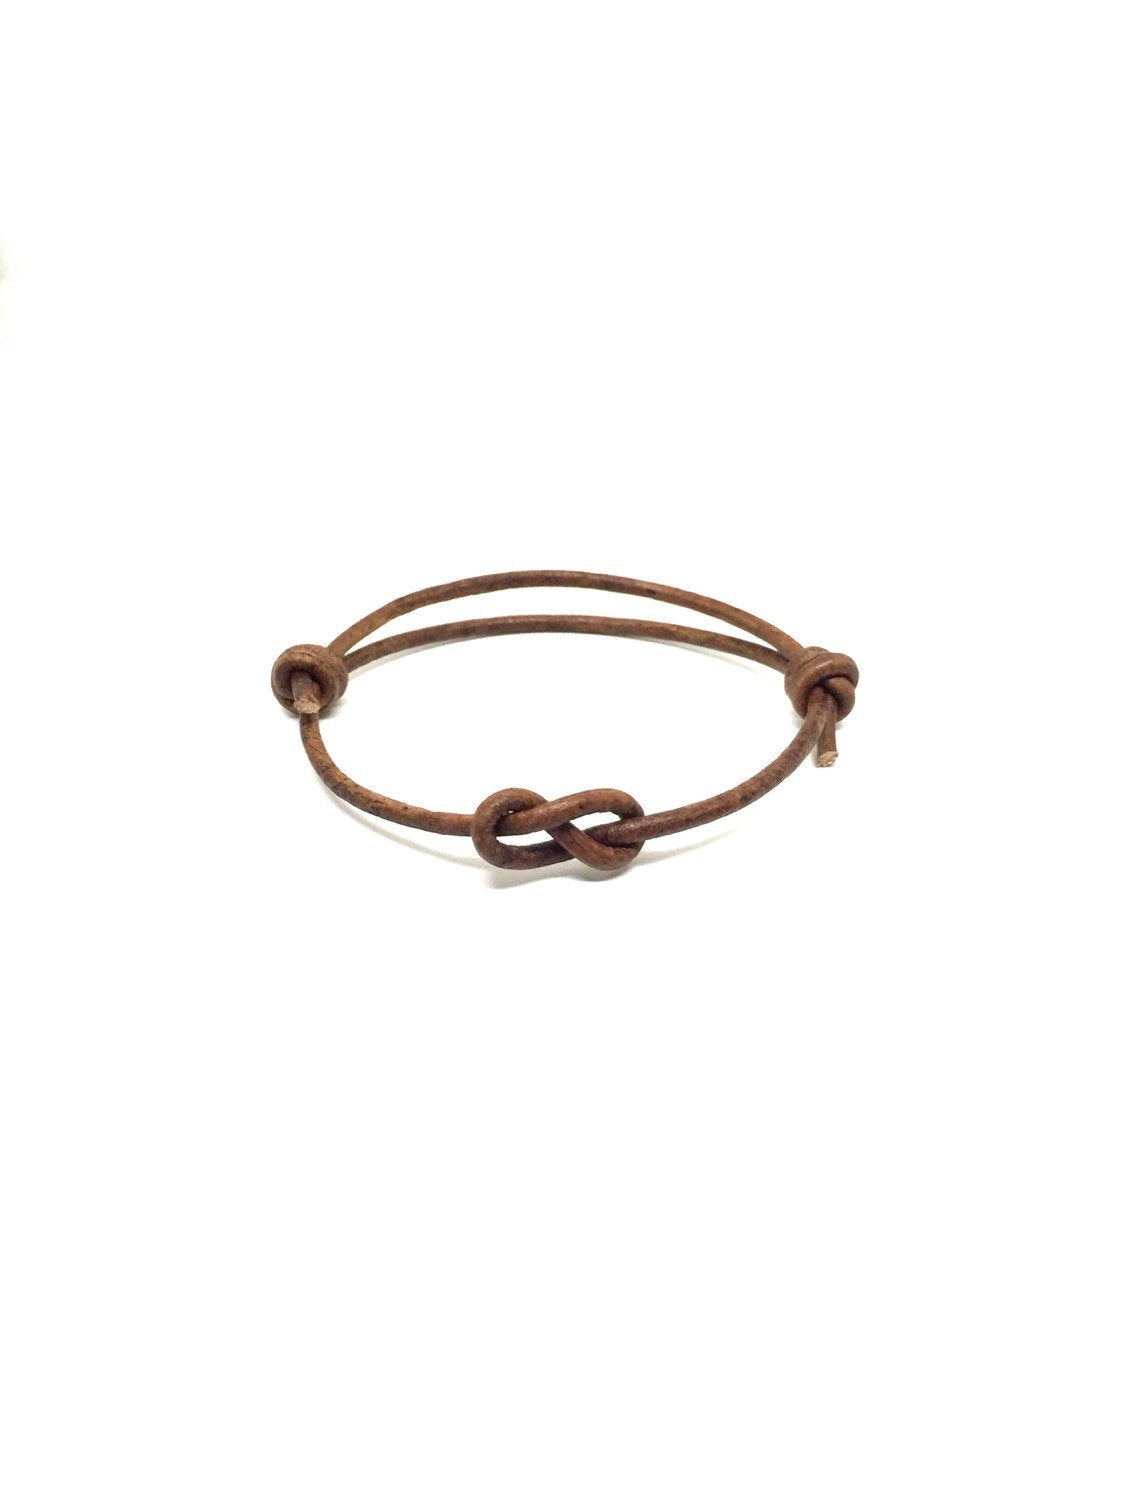 Infinity Knot Leather Bracelet - Gifts&Knots